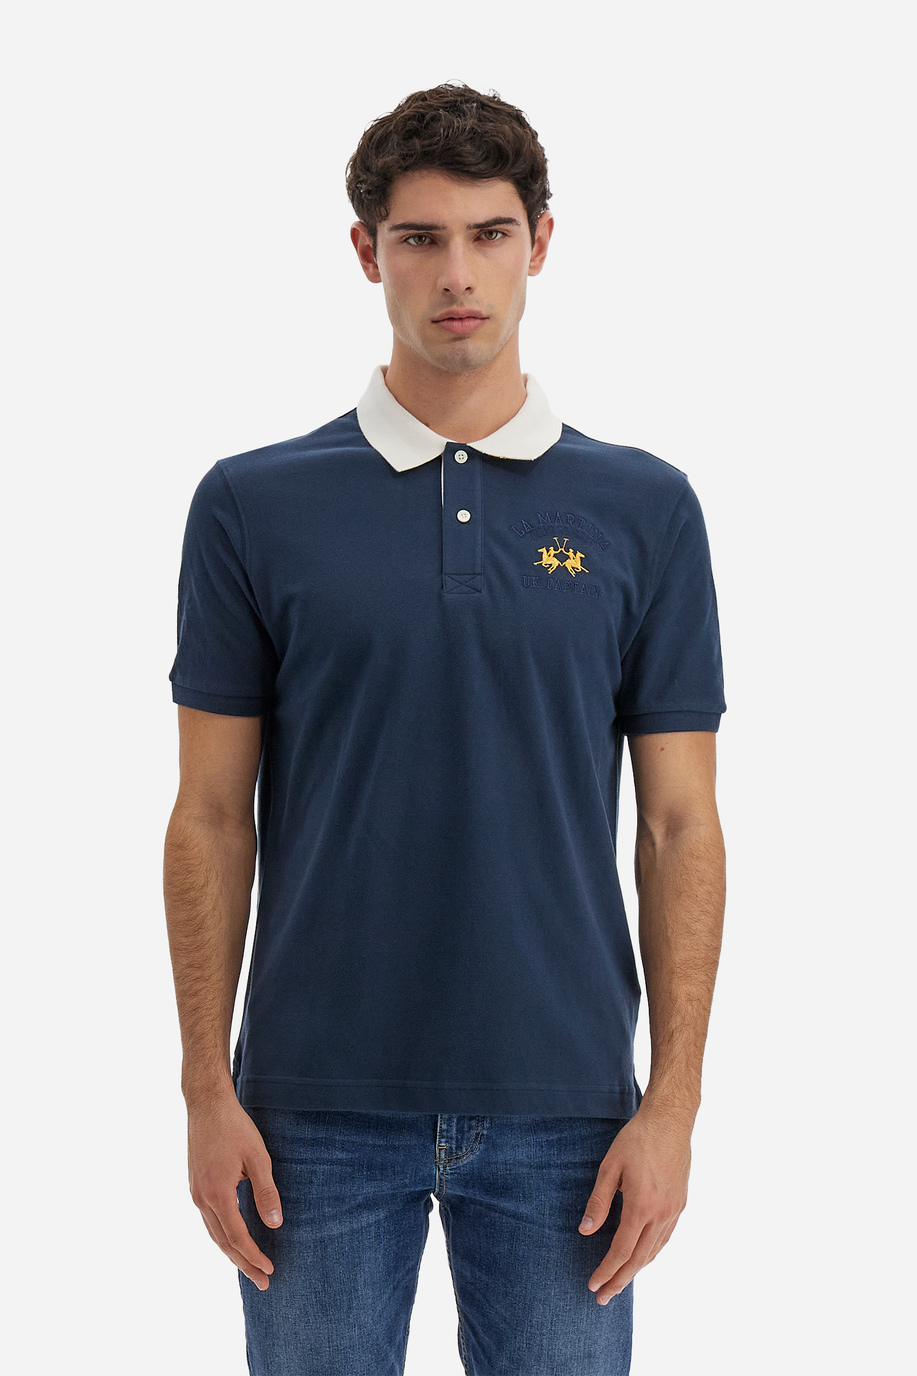 Polo Academy Herren-Kurzarm-Poloshirt mit Maxi-Patch in Volltonfarbe und kontrastierendem Kragen - Vedis - Poloshirts | La Martina - Official Online Shop